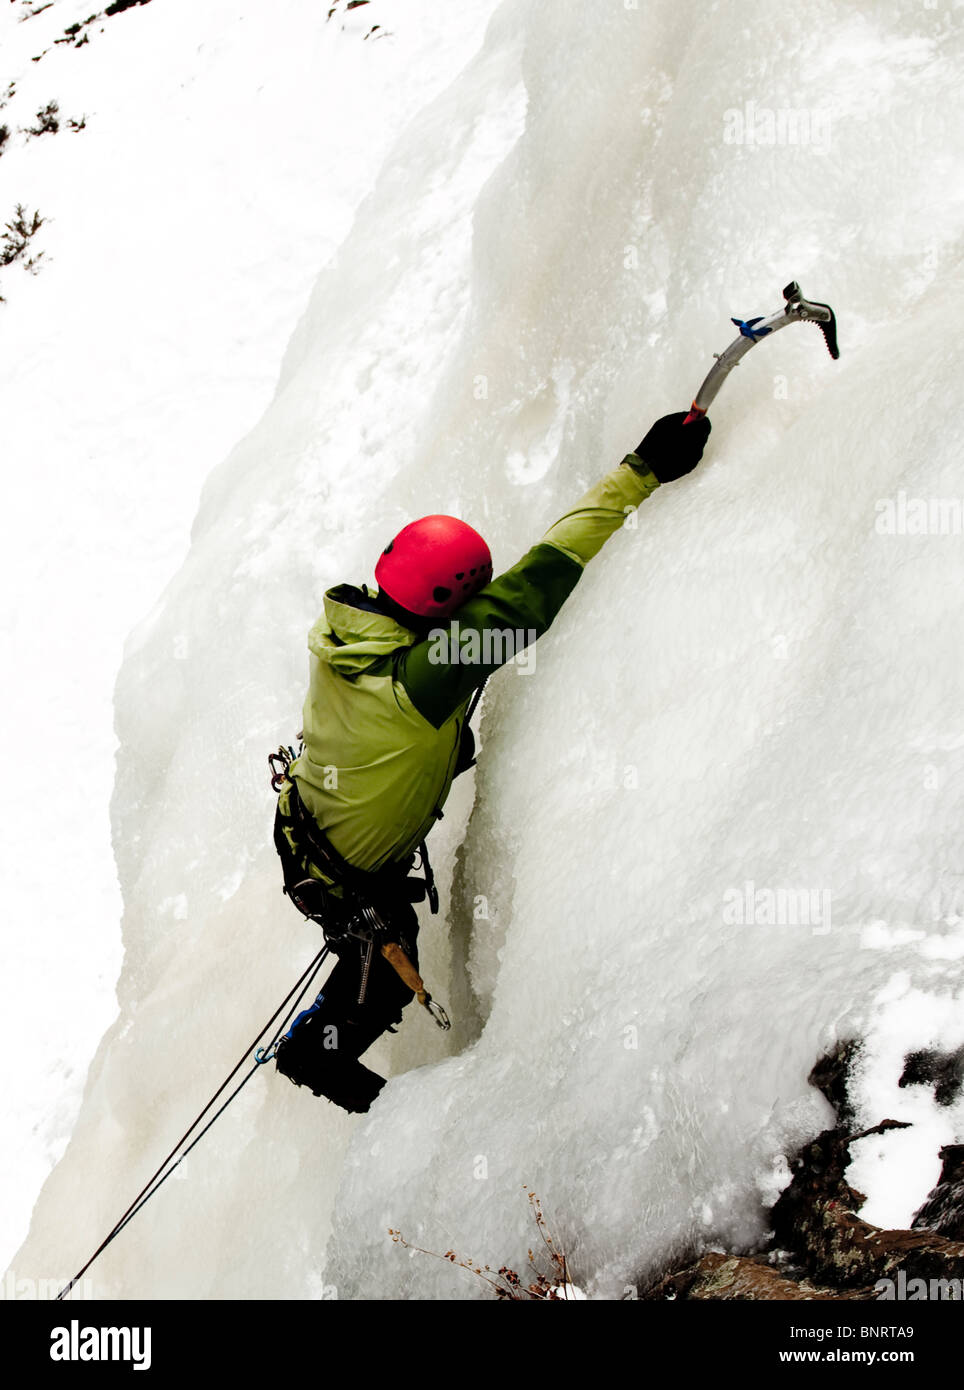 Un homme l'escalade sur glace. Banque D'Images